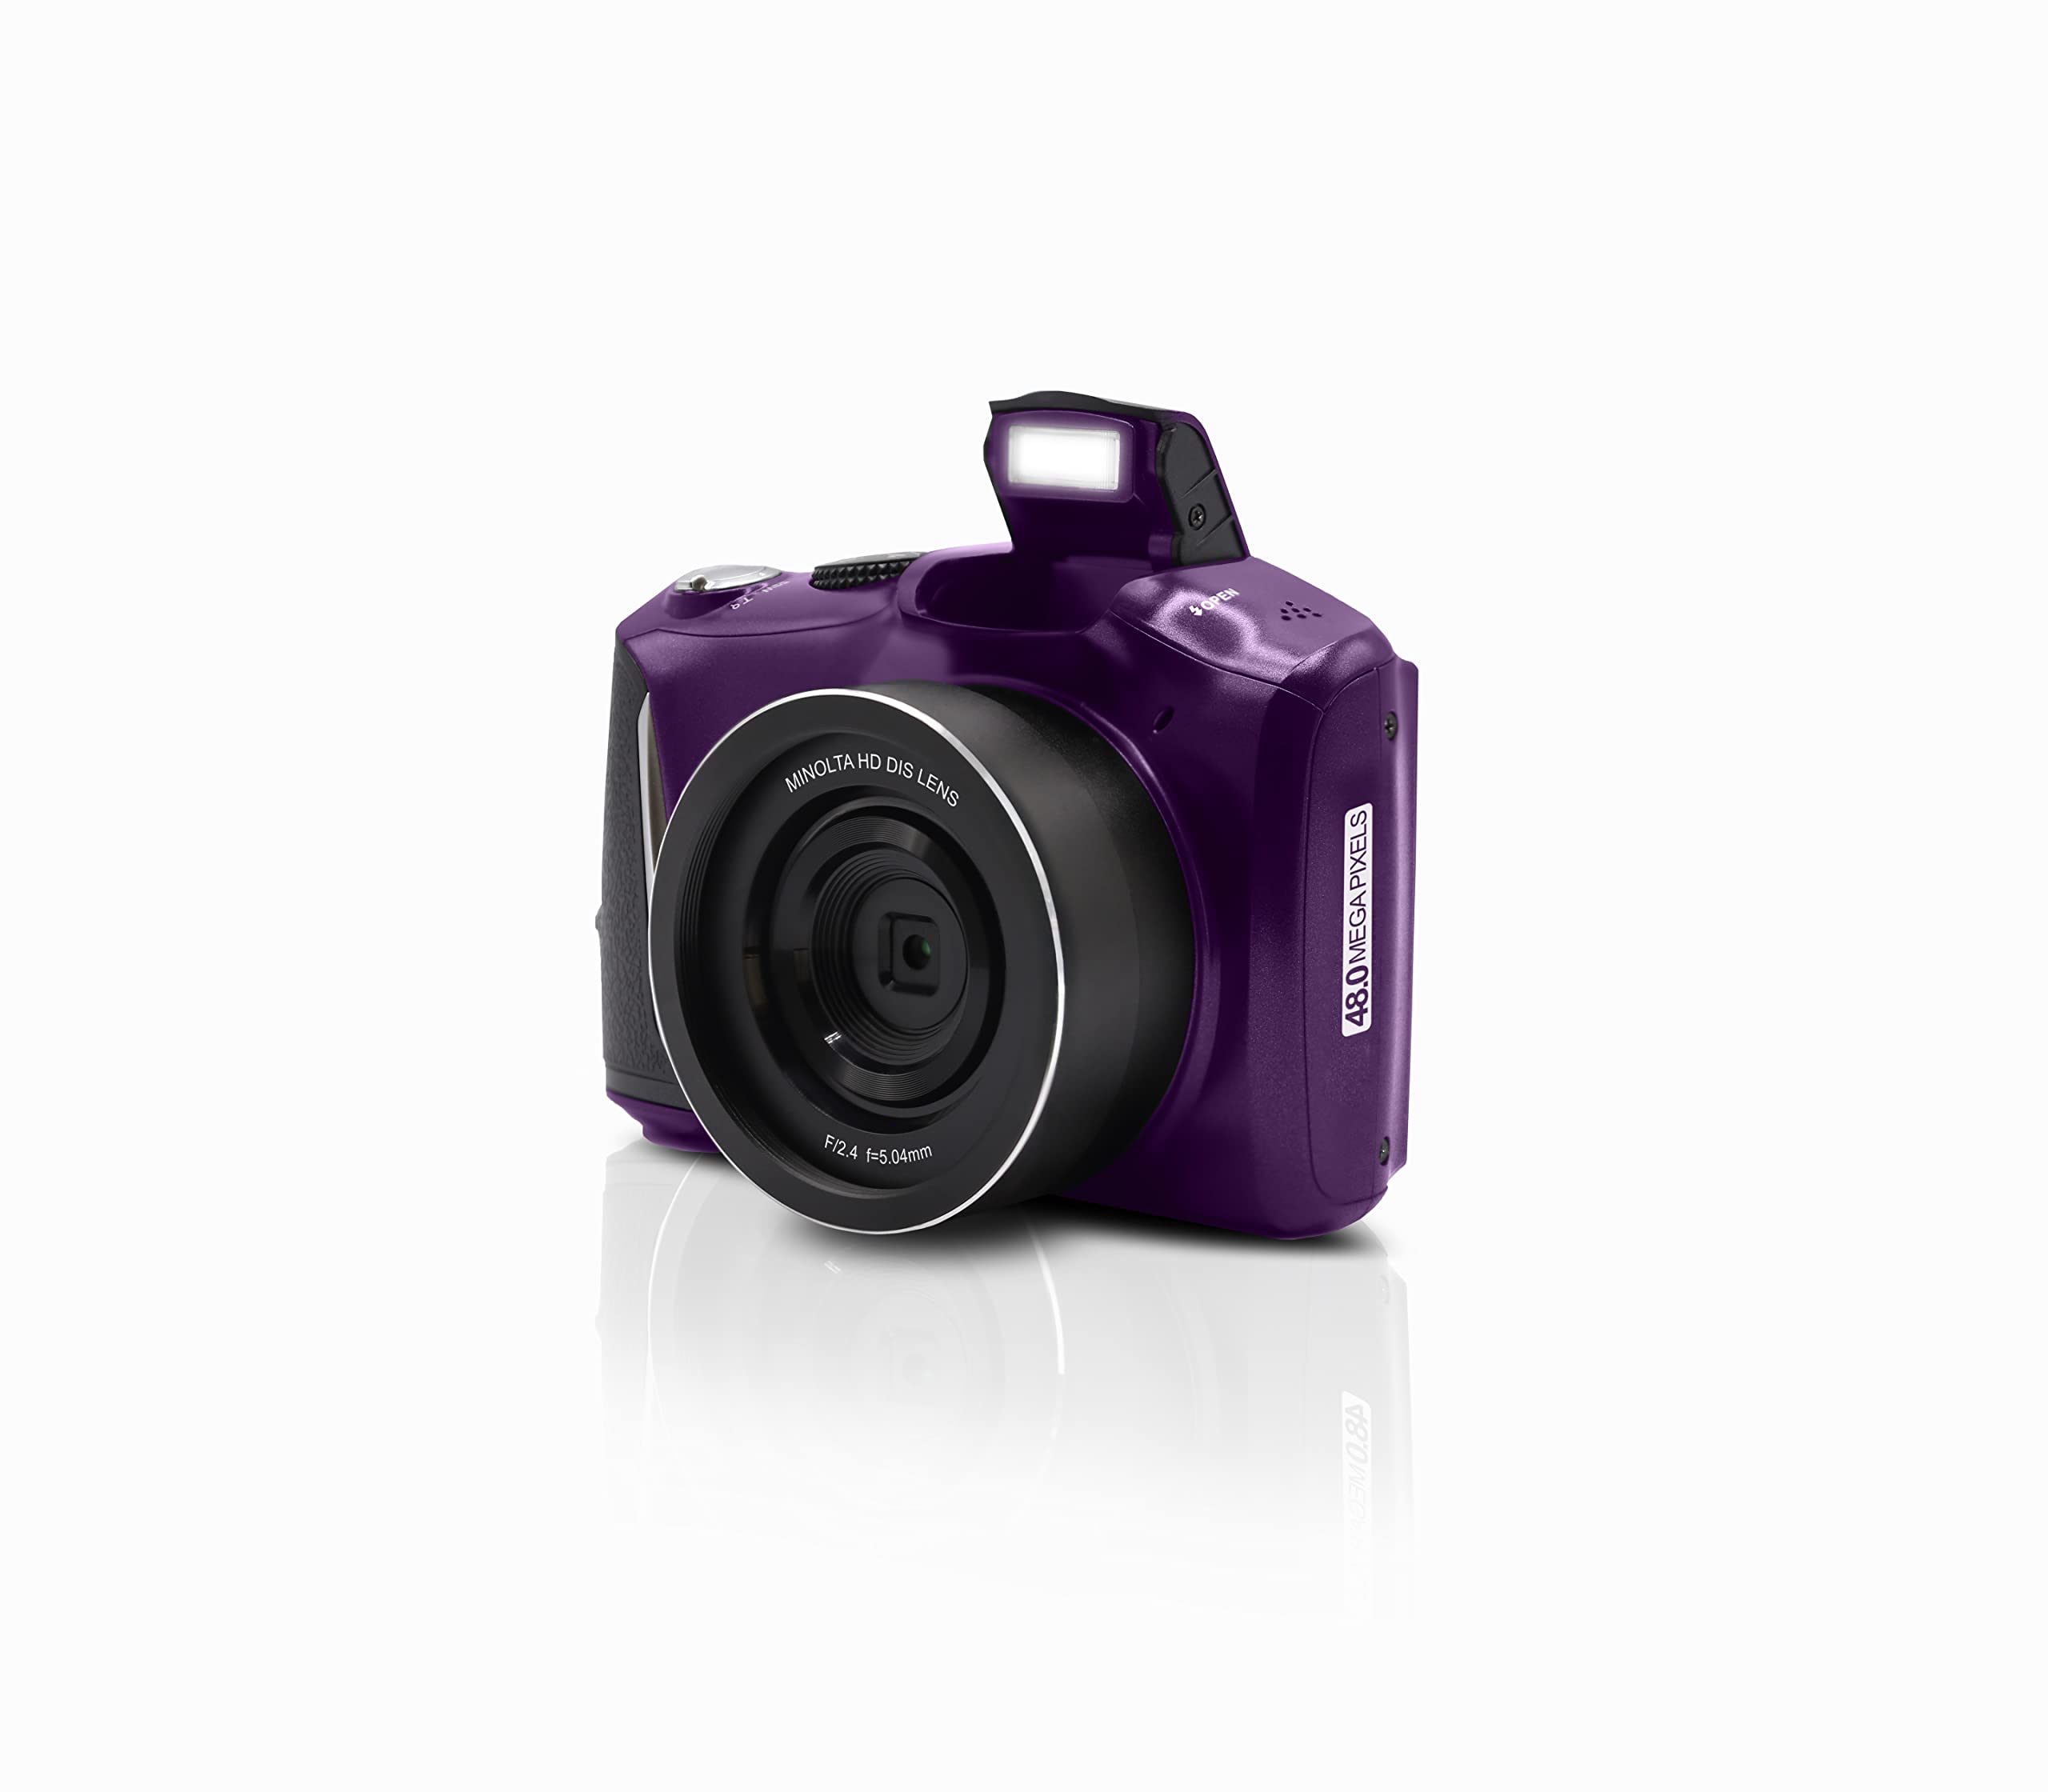 Minolta MND50 48 MP / 4K Ultra HD Digital Camera (Purple)